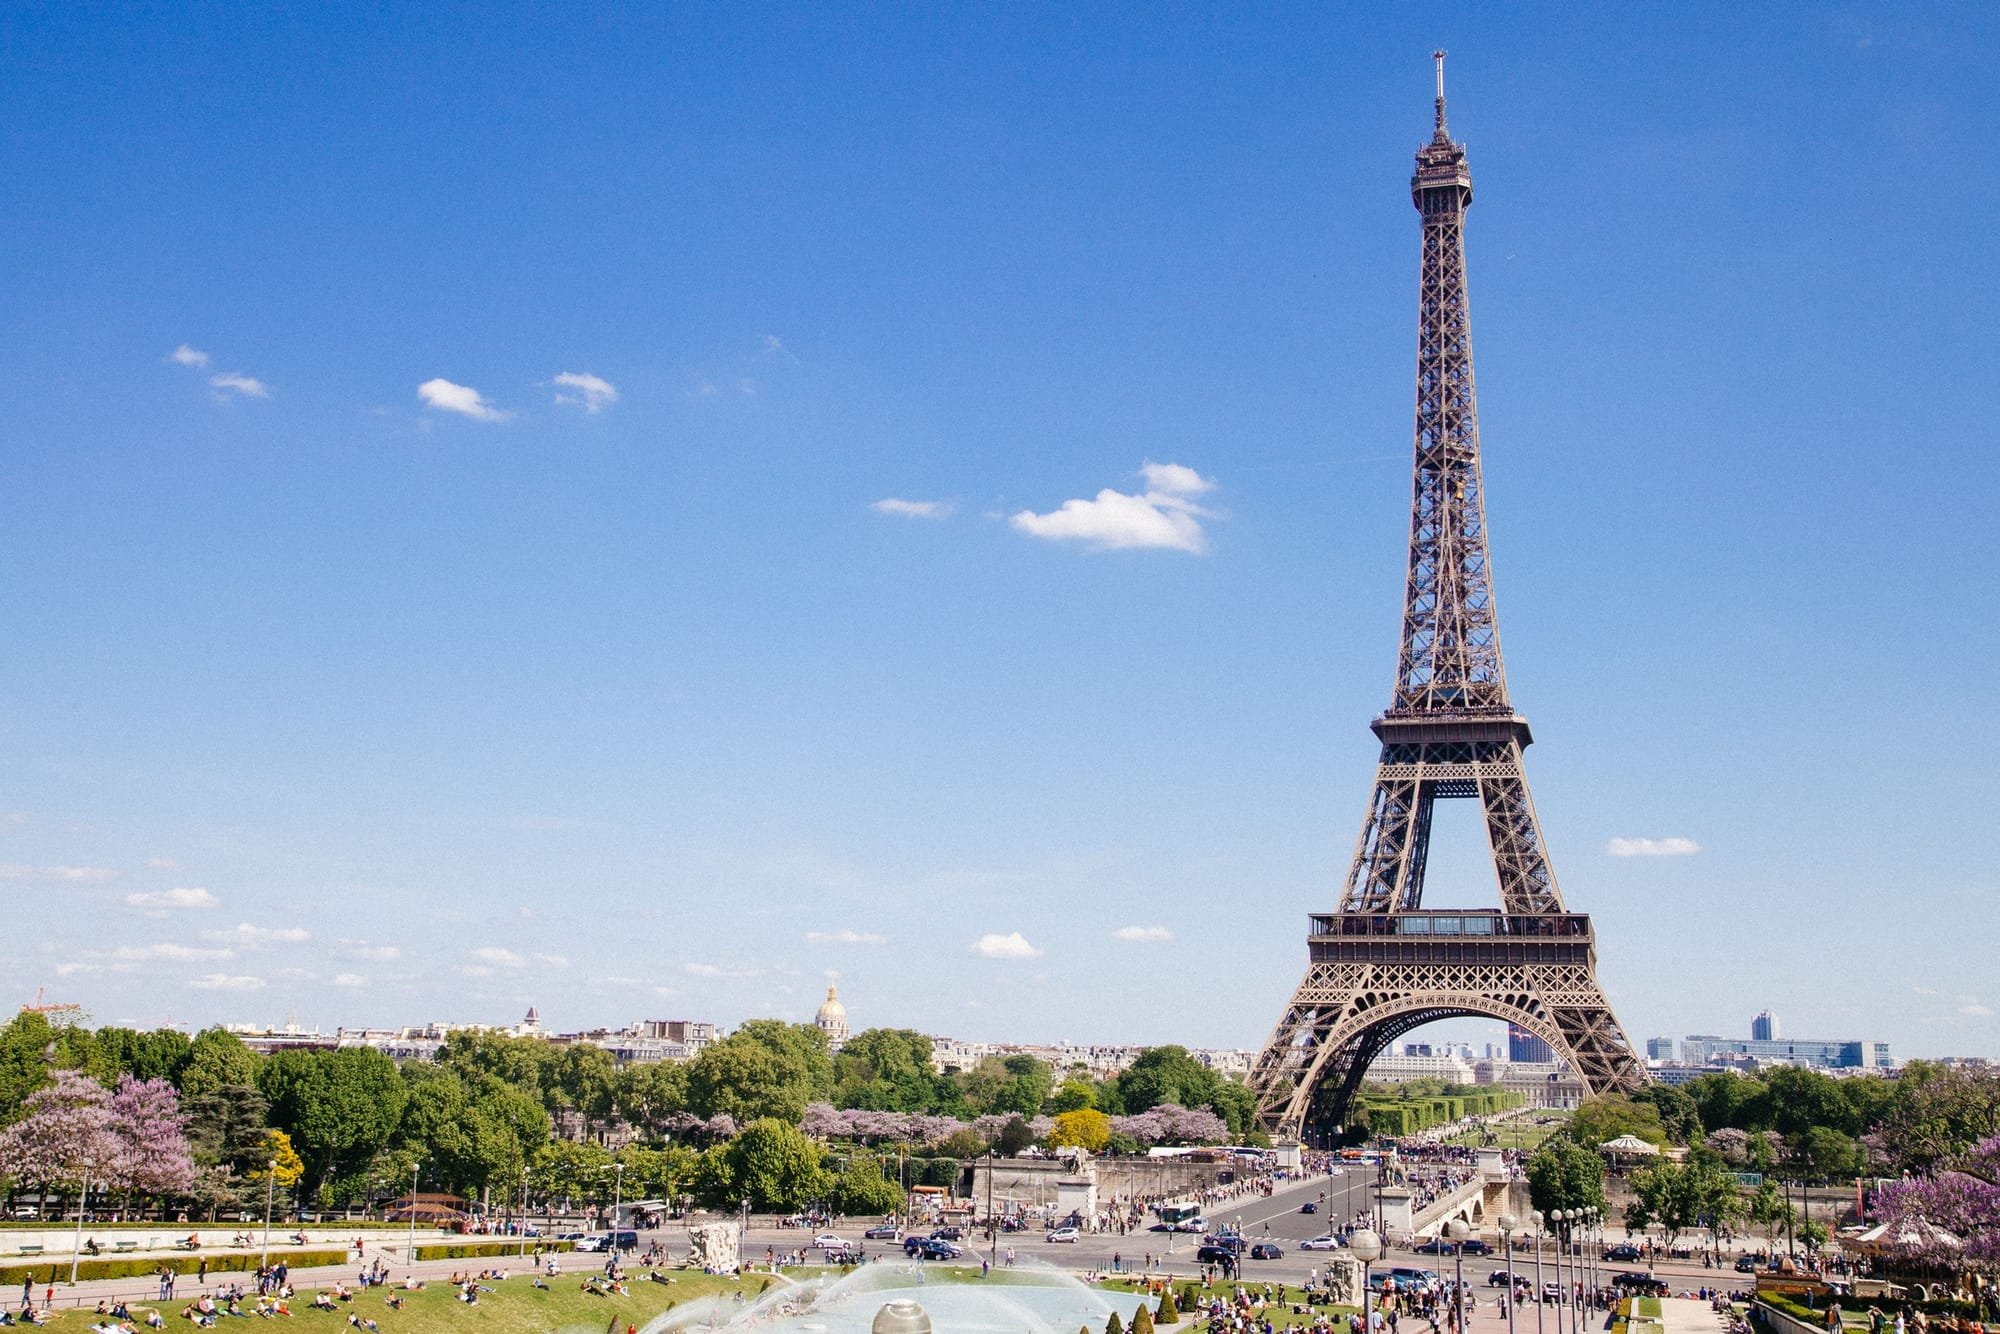 إلغاء إقامة النسخة الـ 58 لمعرض باريس الدولي للزراعة بسبب انتشار كورونا